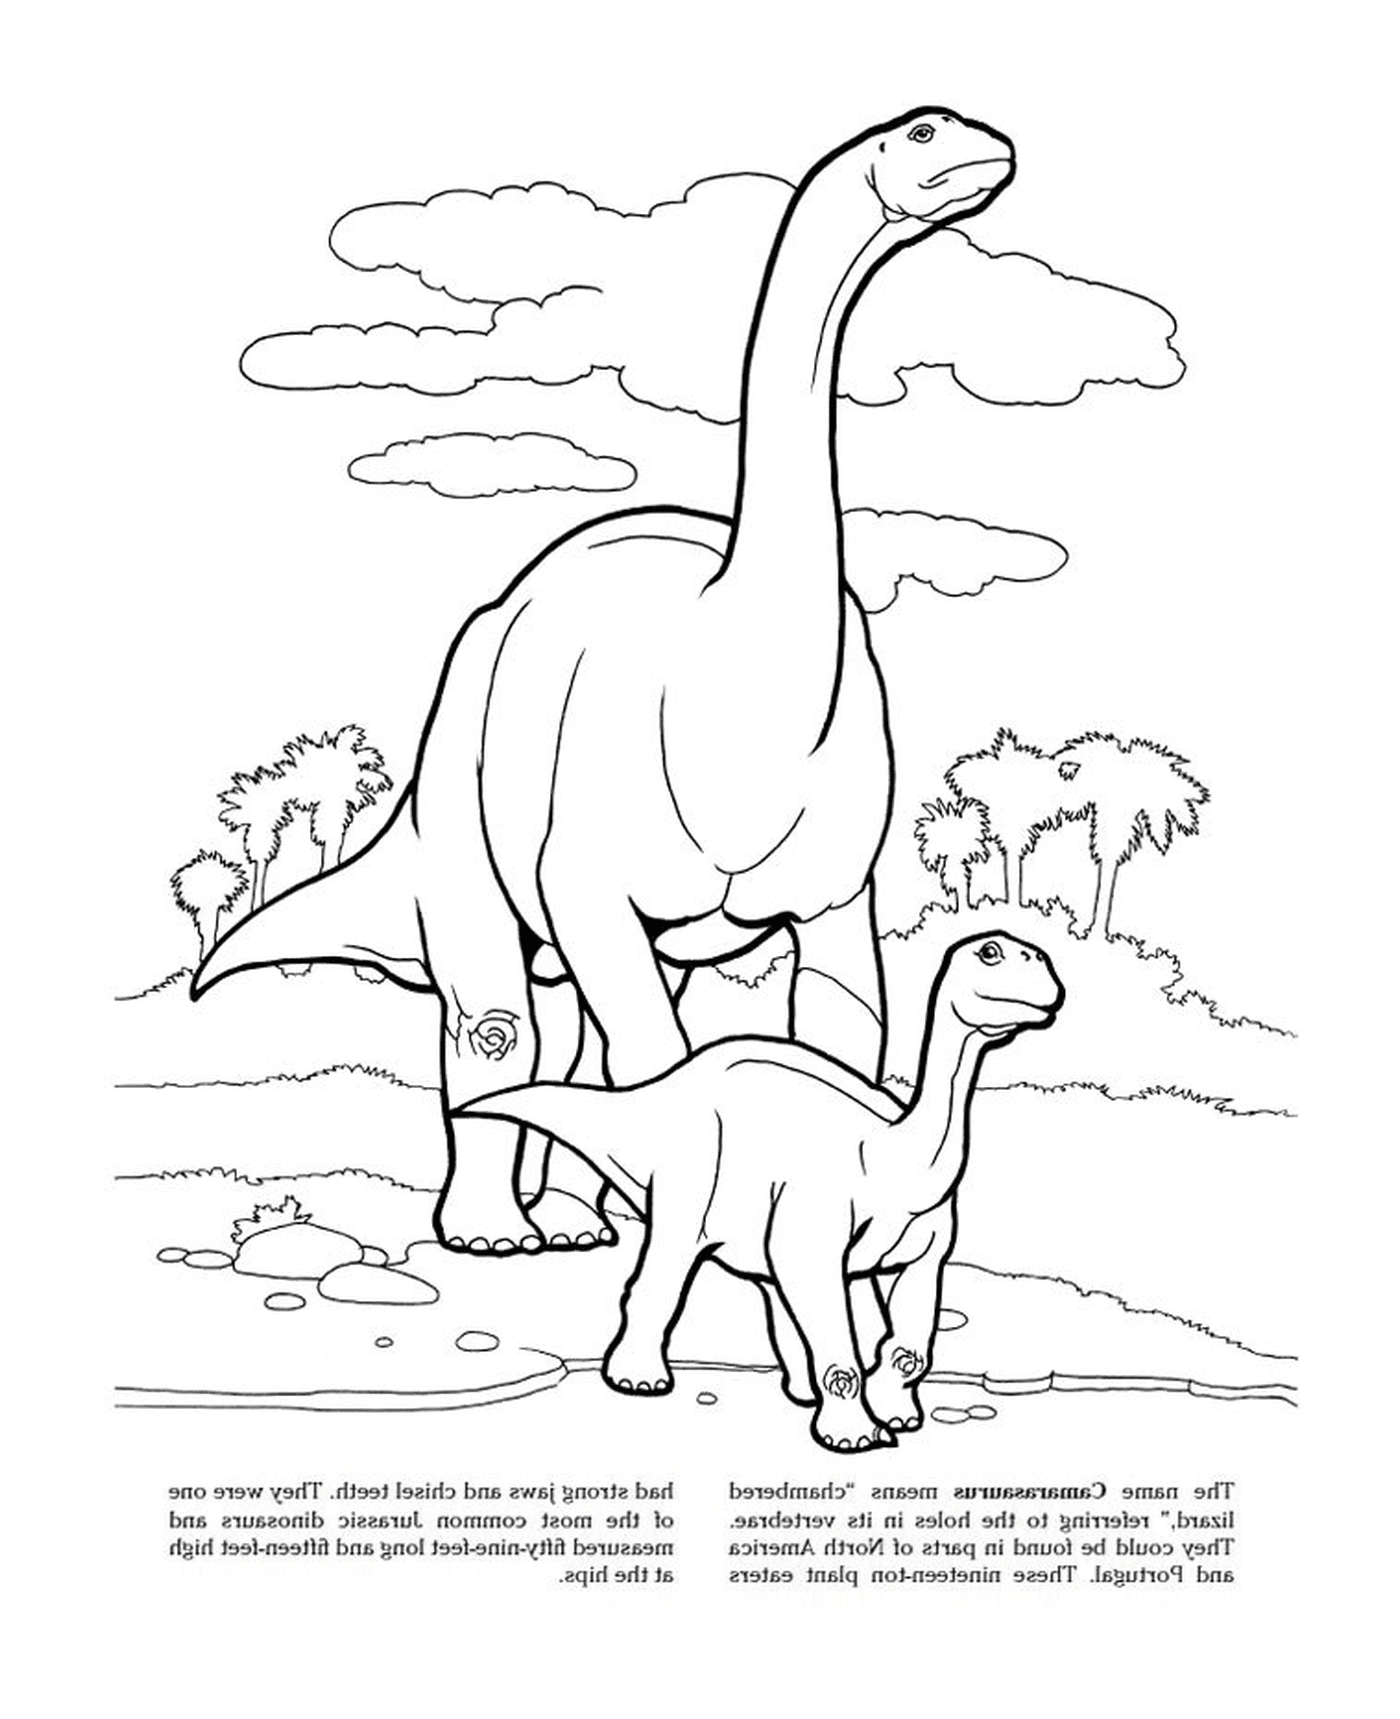  Camarasaurus de Jurassic Park, uma família de dinossauros 